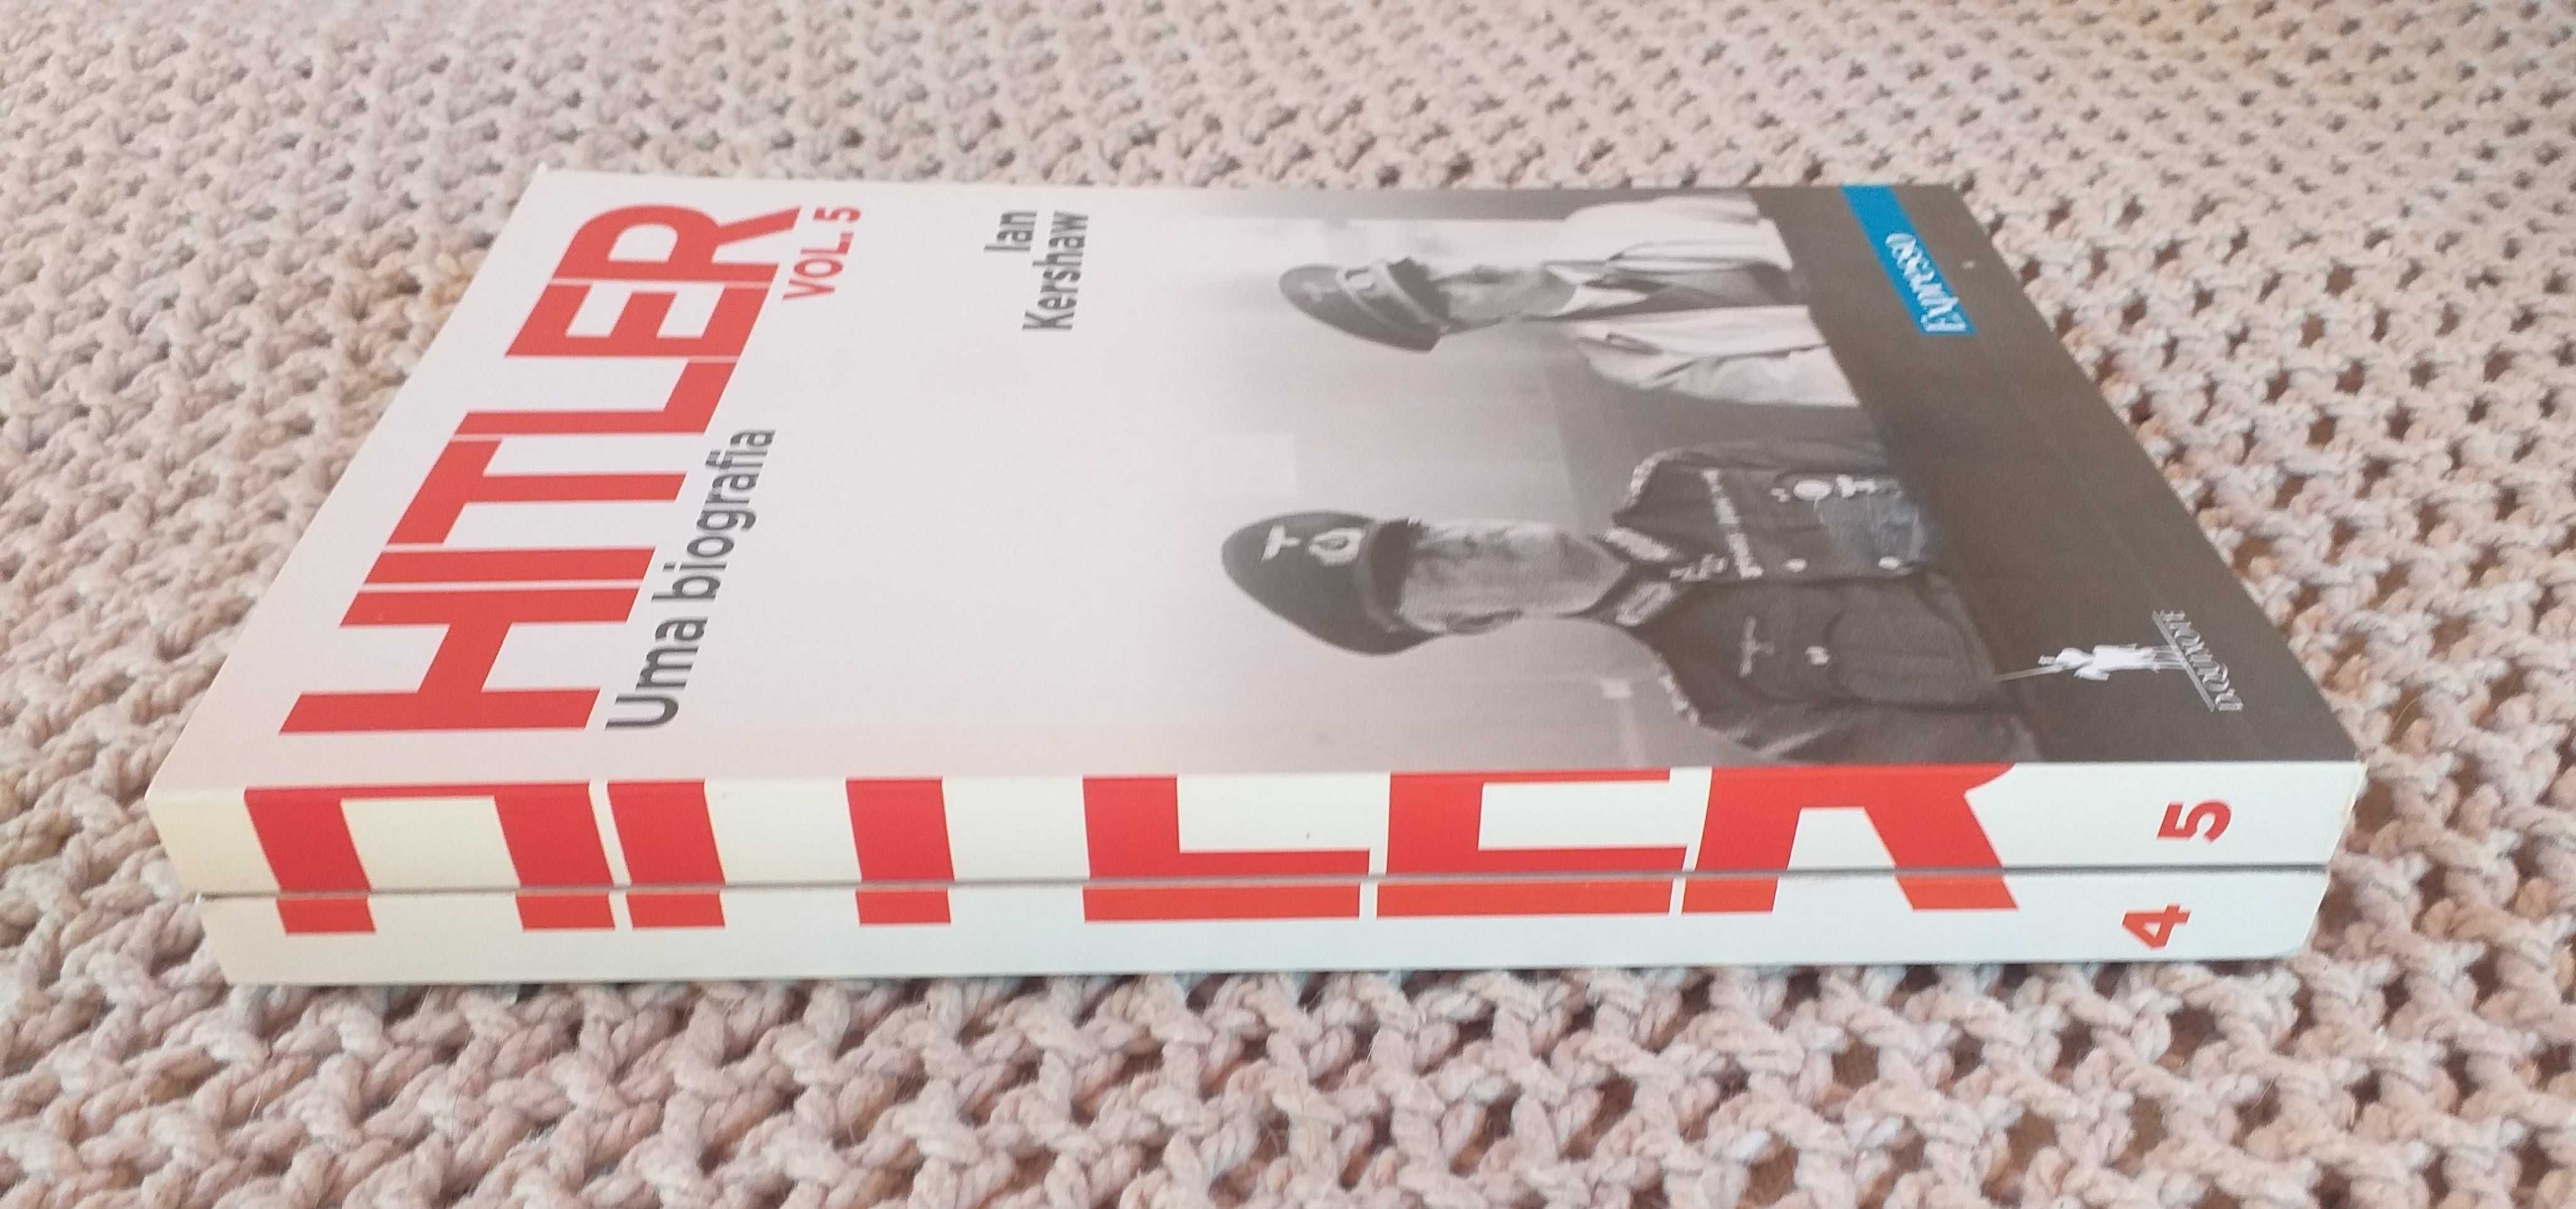 Livros "Hitler: uma biografia", volumes 4 e 5 novos